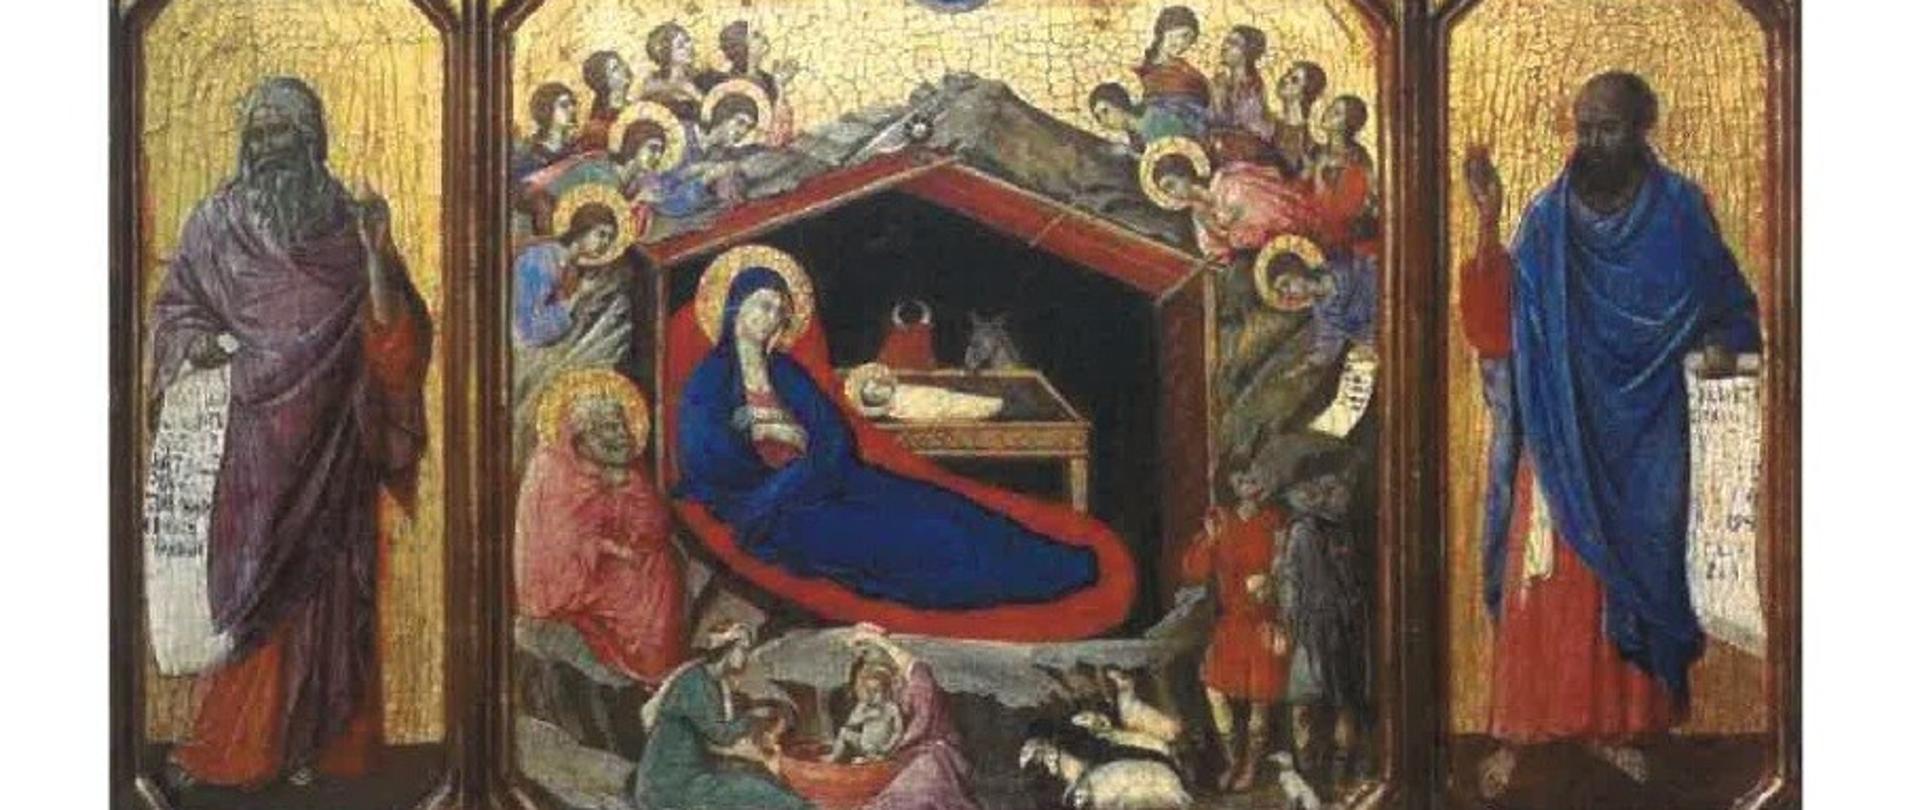 Zdjęcie przedstawia obraz Duccio di Buoninsegna, na którym znajduje się stajenka Betlejemska z Maryją i narodzonym Jezusem otoczona aniołami oraz pasterzami. 